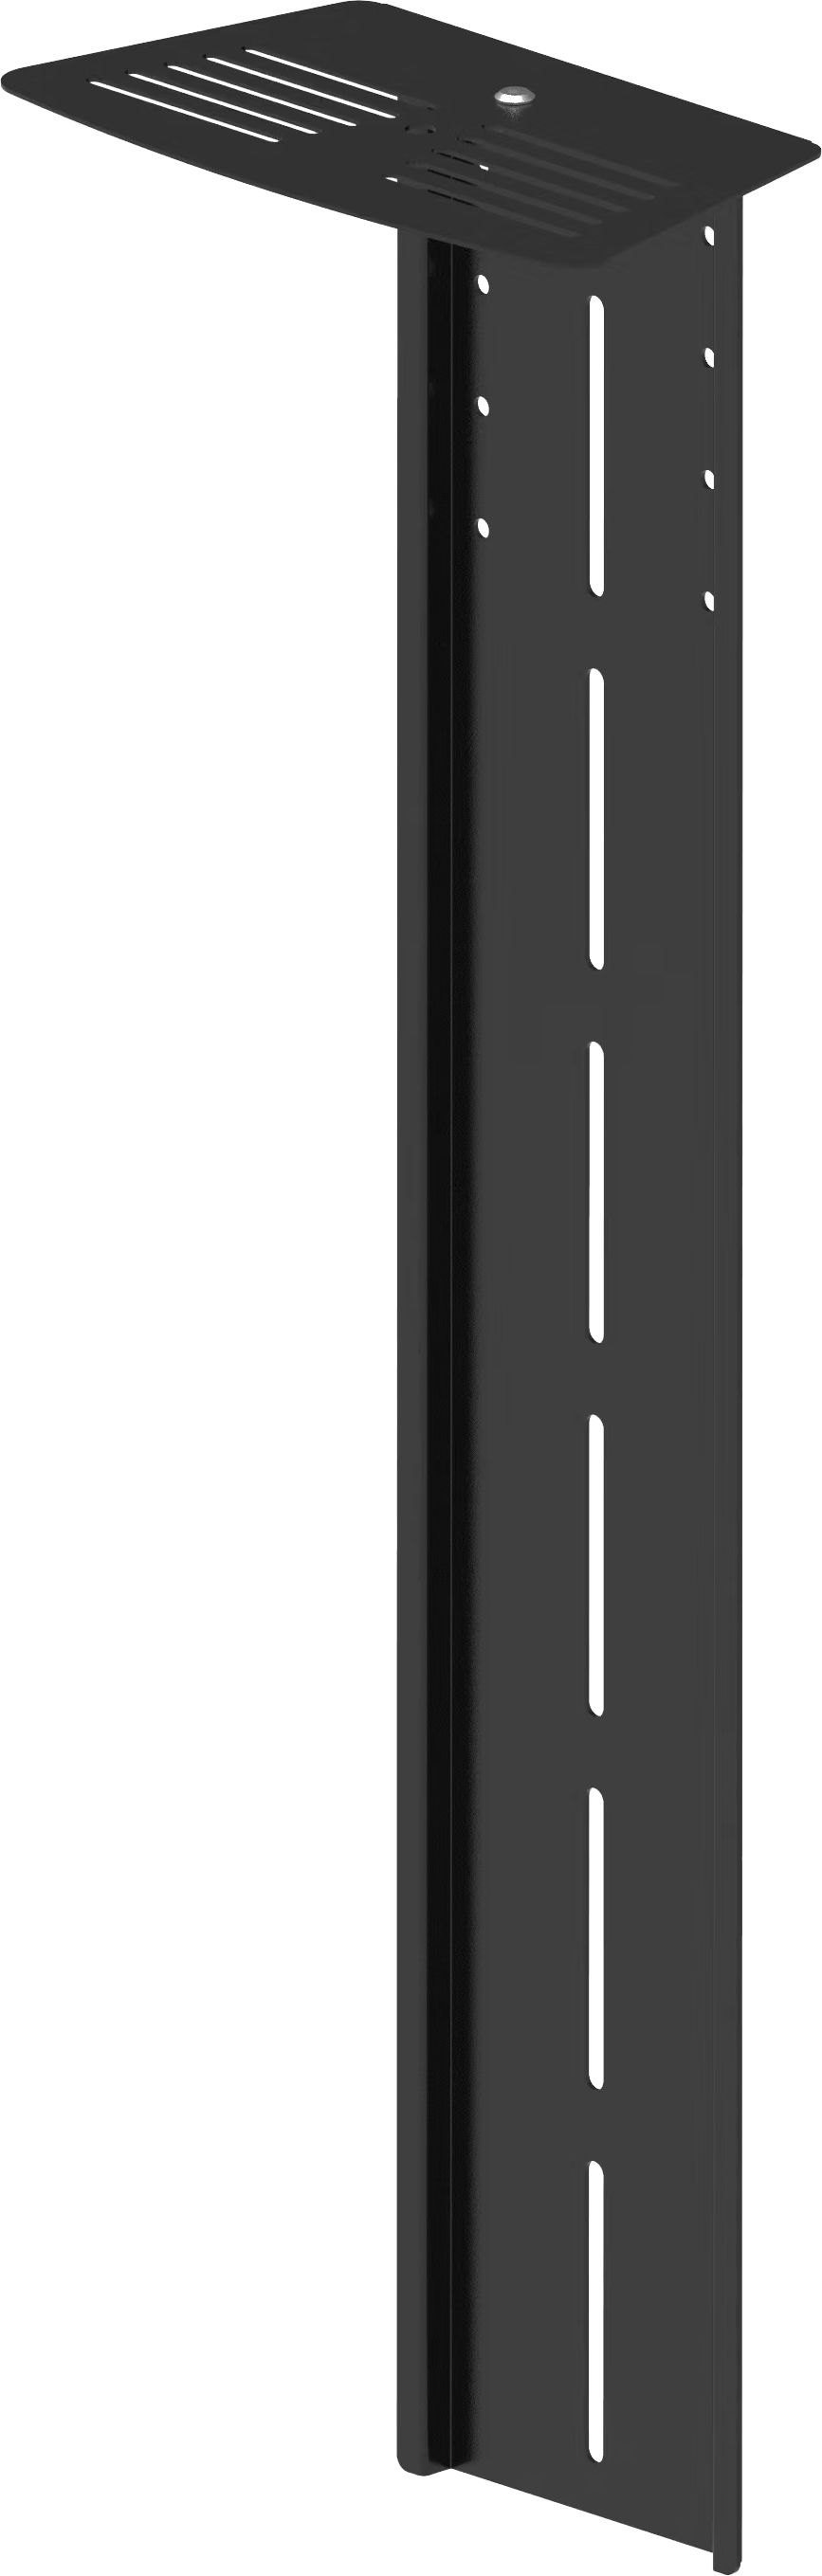 An image showing Estante para videoconferencias para soportes de pared